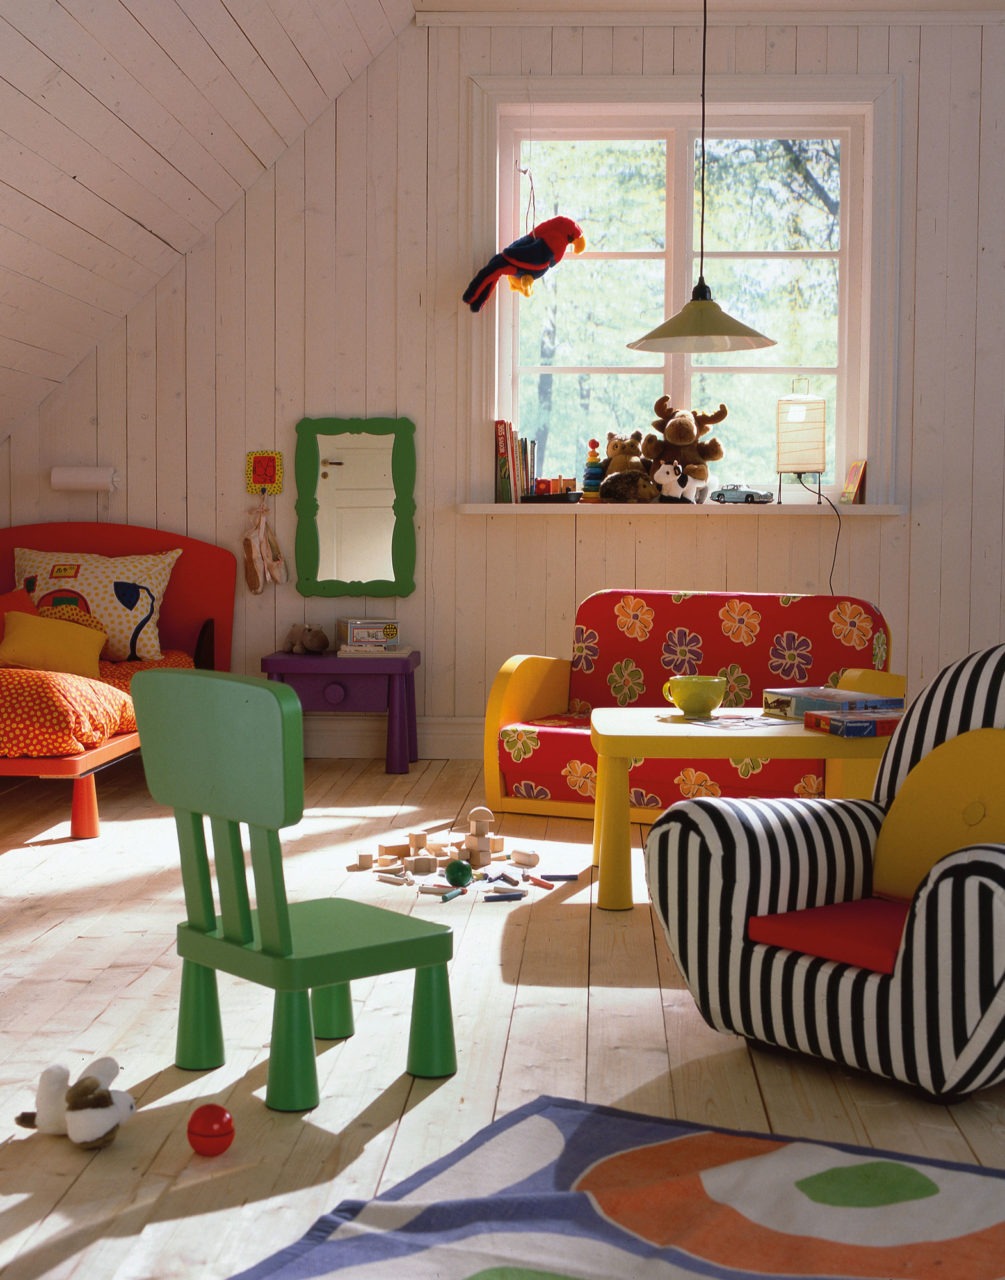 Mobilier MAMMUT coloré aux formes rondes, jouets éparpillés dans une pièce avec sol, murs et plafond mansardé en bois clair.